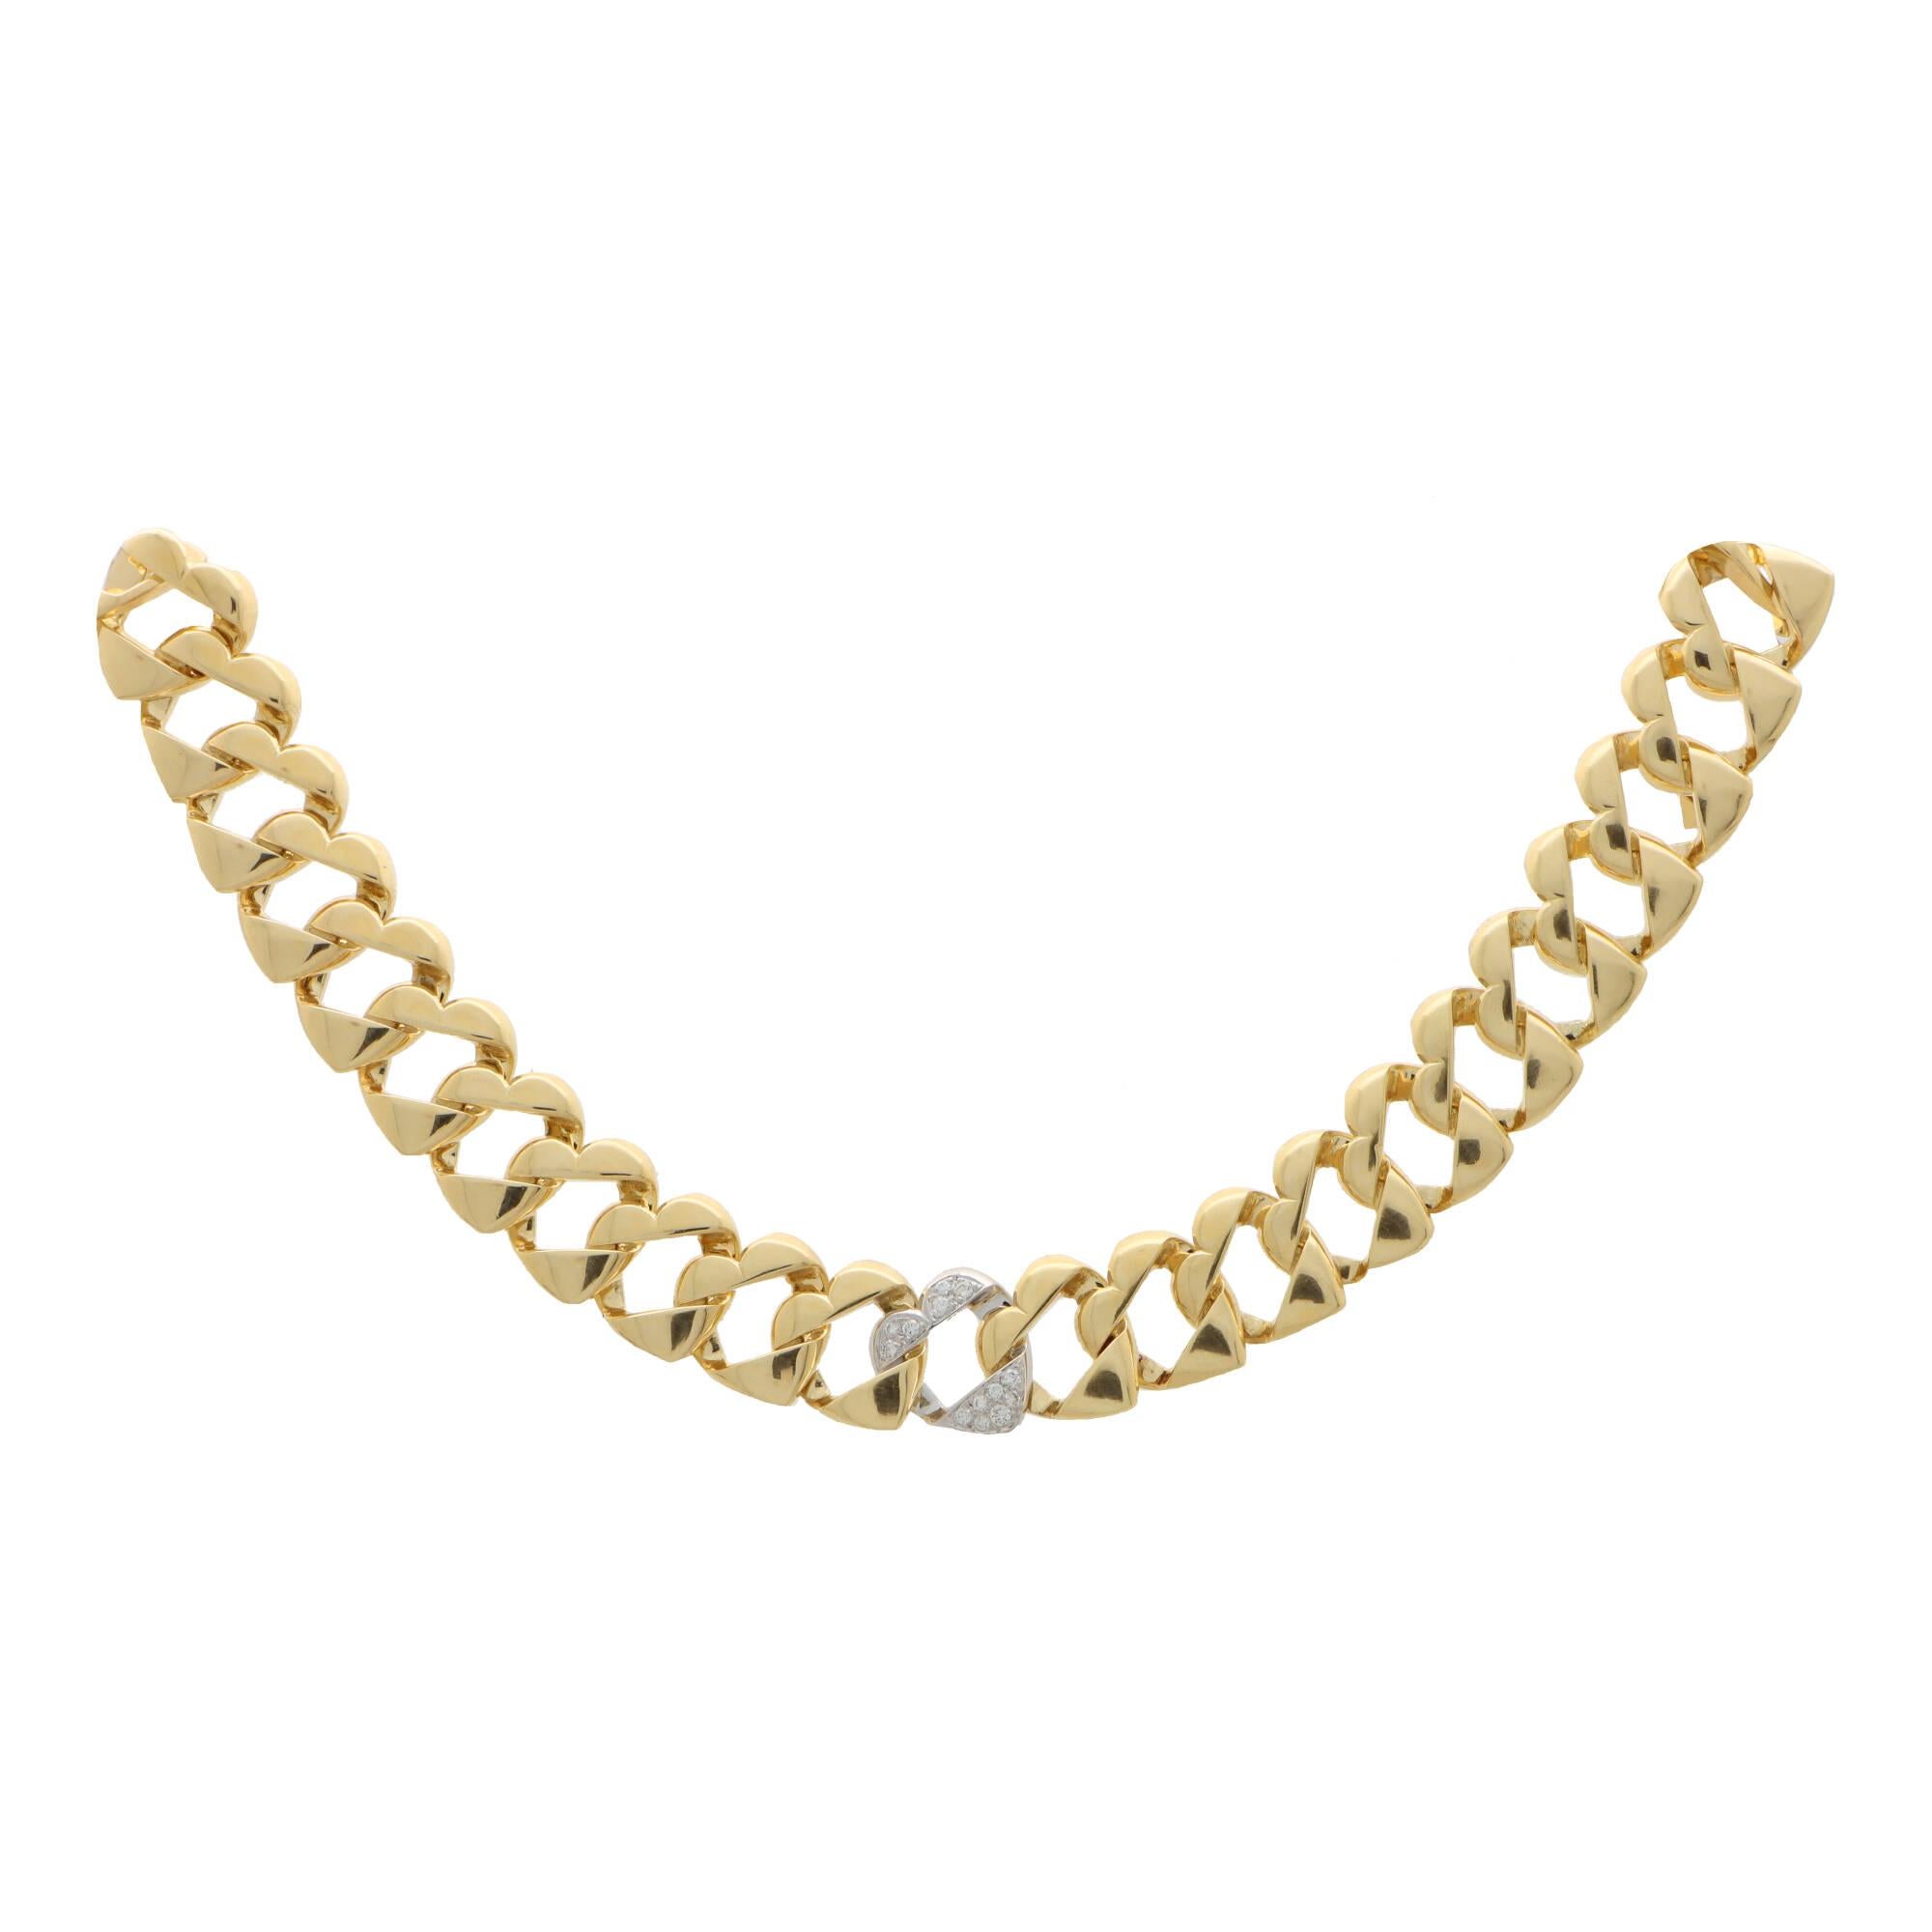 Magnifique collier vintage Tiffany & Co. à maillons plats en forme de cœur torsadé, en or jaune et blanc 18 carats.

Le collier est composé de 49 maillons plats en forme de cœur et s'adapte parfaitement au cou. Le collier est fabuleux à porter et,